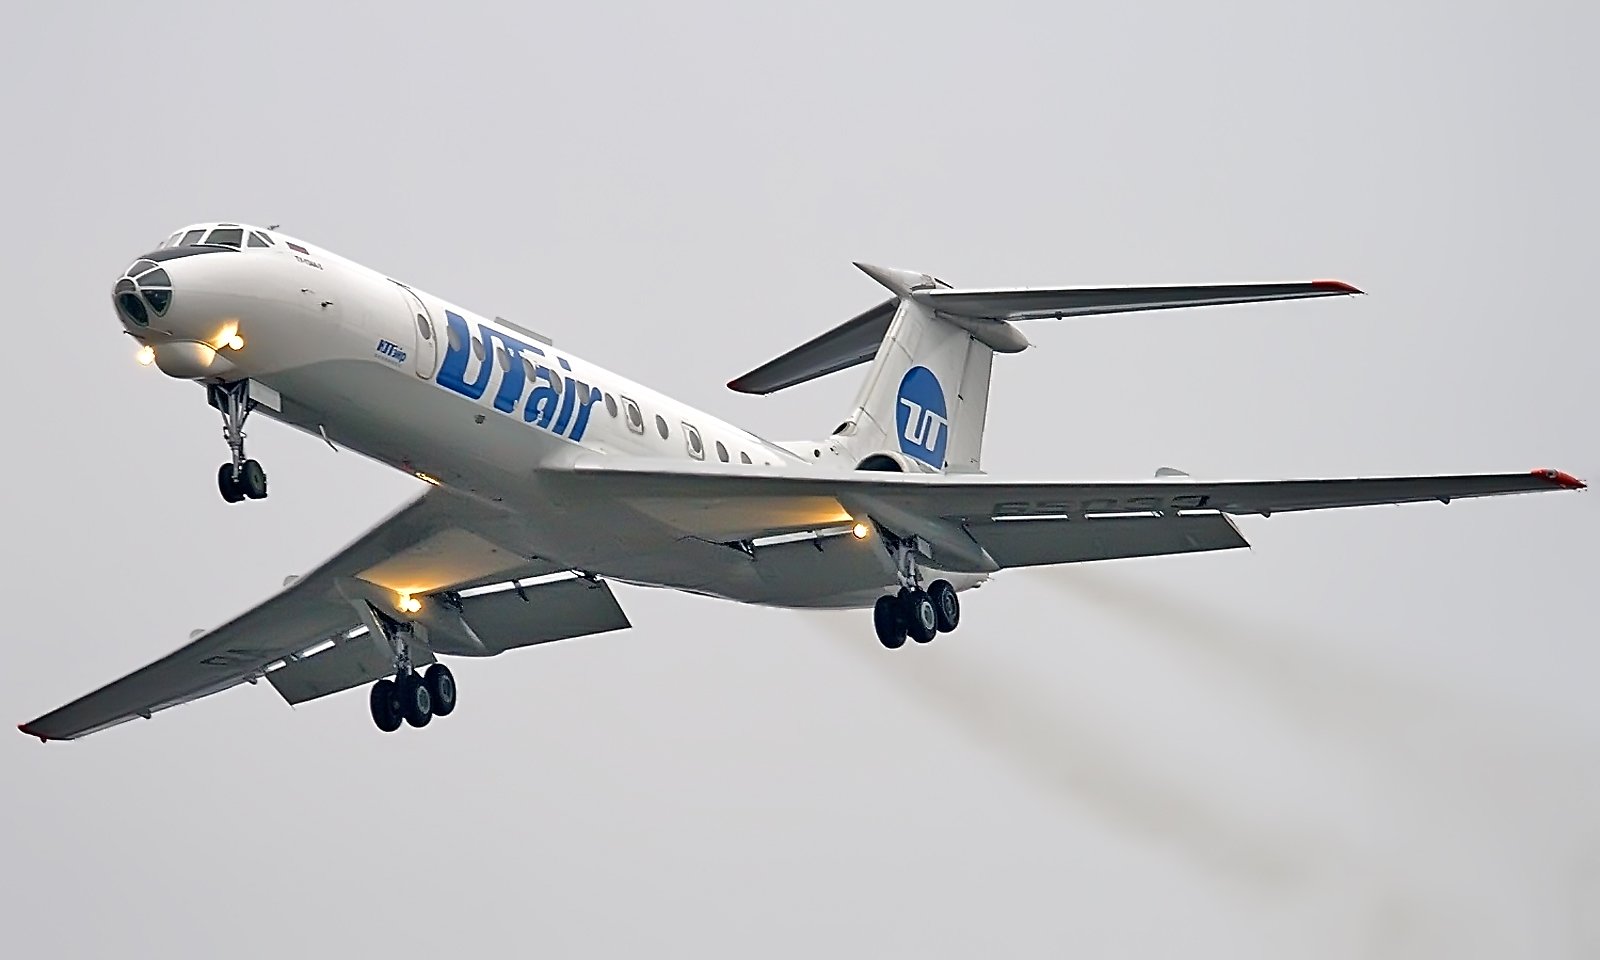 Utair ռուսական ավիաընկերությունը հարթել է երթուղին Մոսկվայից Կալինինգրադ՝ շրջանցելով Բելառուսը